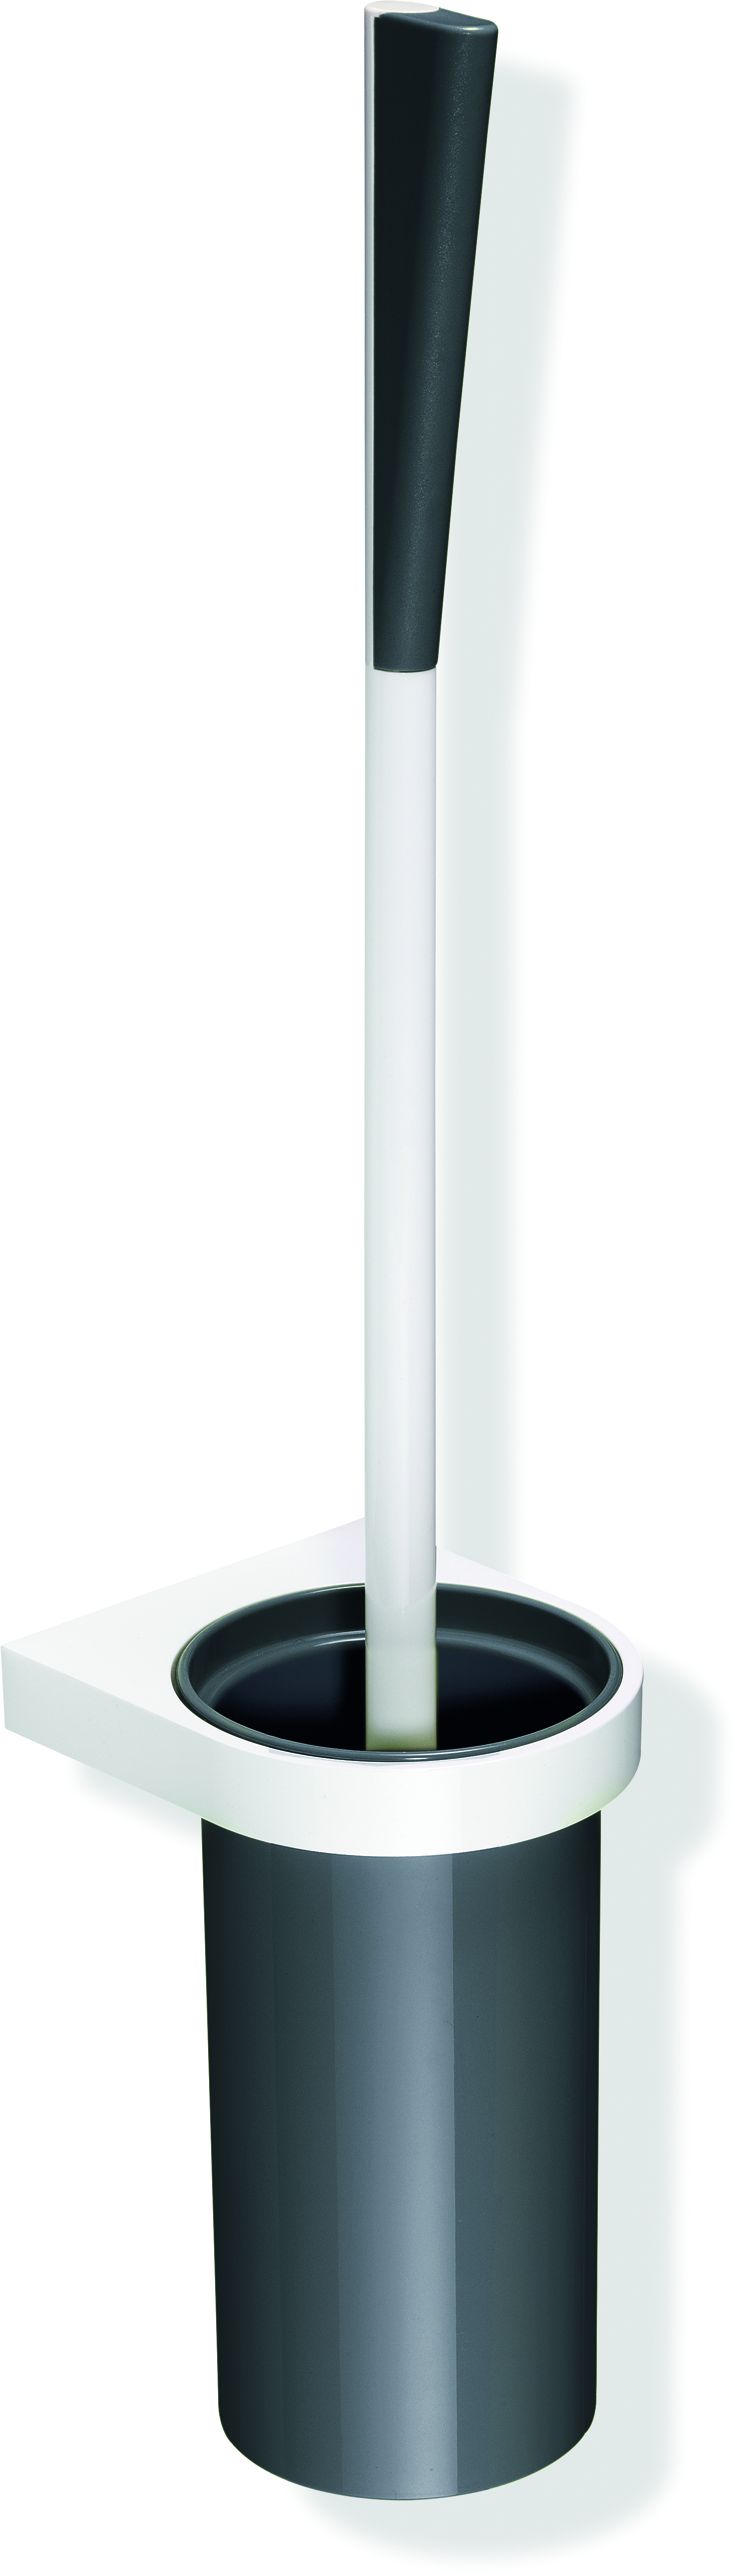 Hewi System 800 K Toilettenbürstengarnitur 800.20.2009184 Behälter Kunststoff, Halter und Bürstenstiel signalweiß, umbra